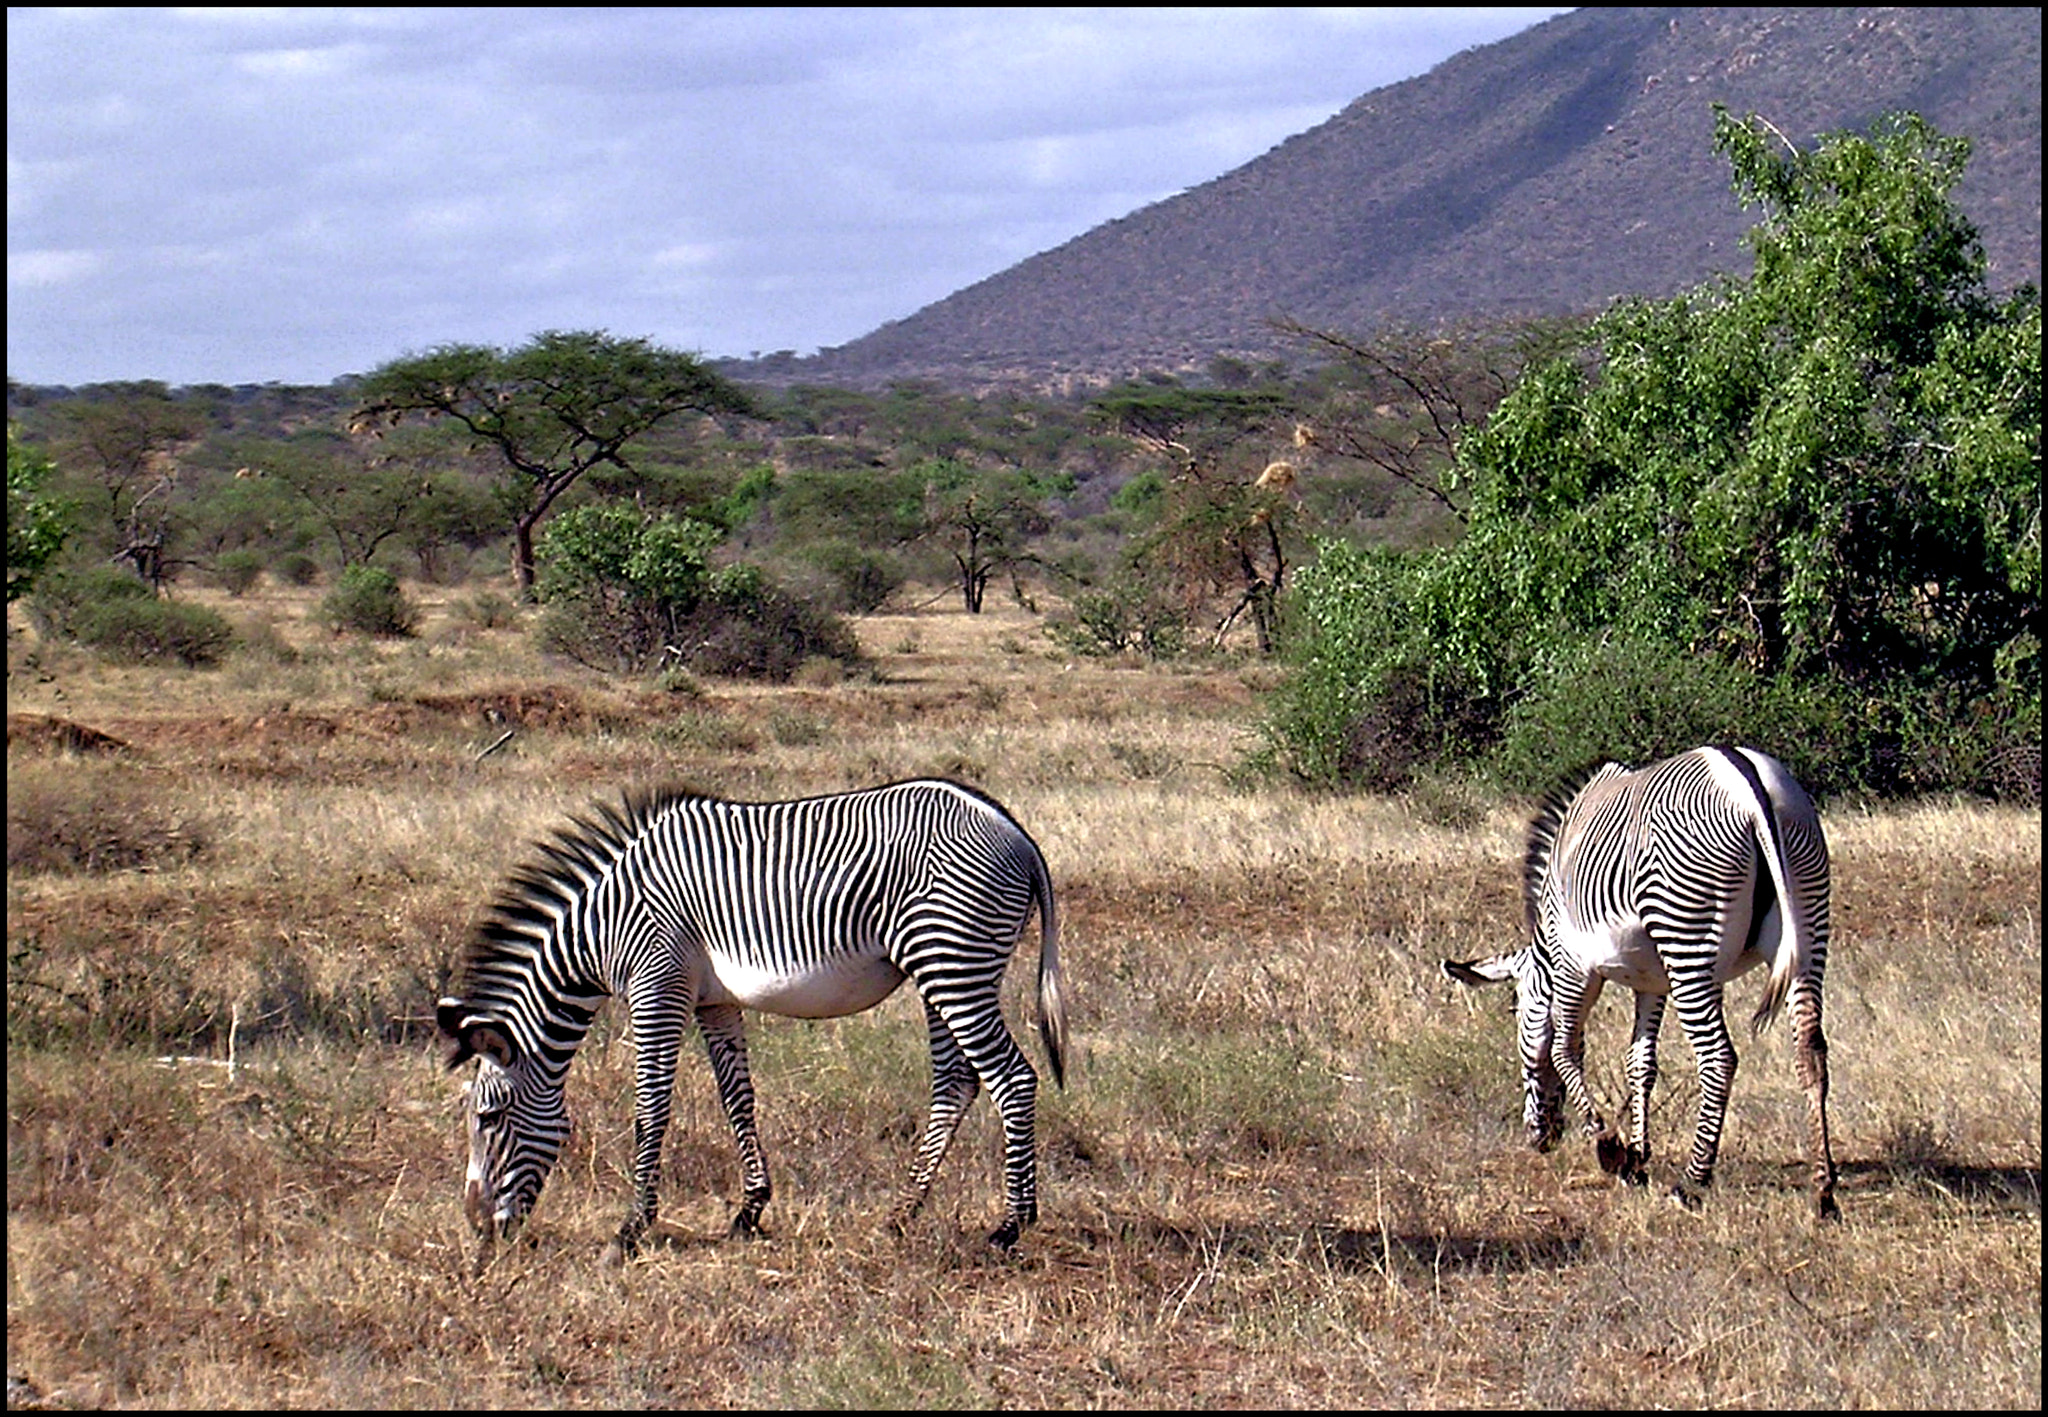 Nikon E3100 sample photo. Grevy’s zebras in the samburu photography